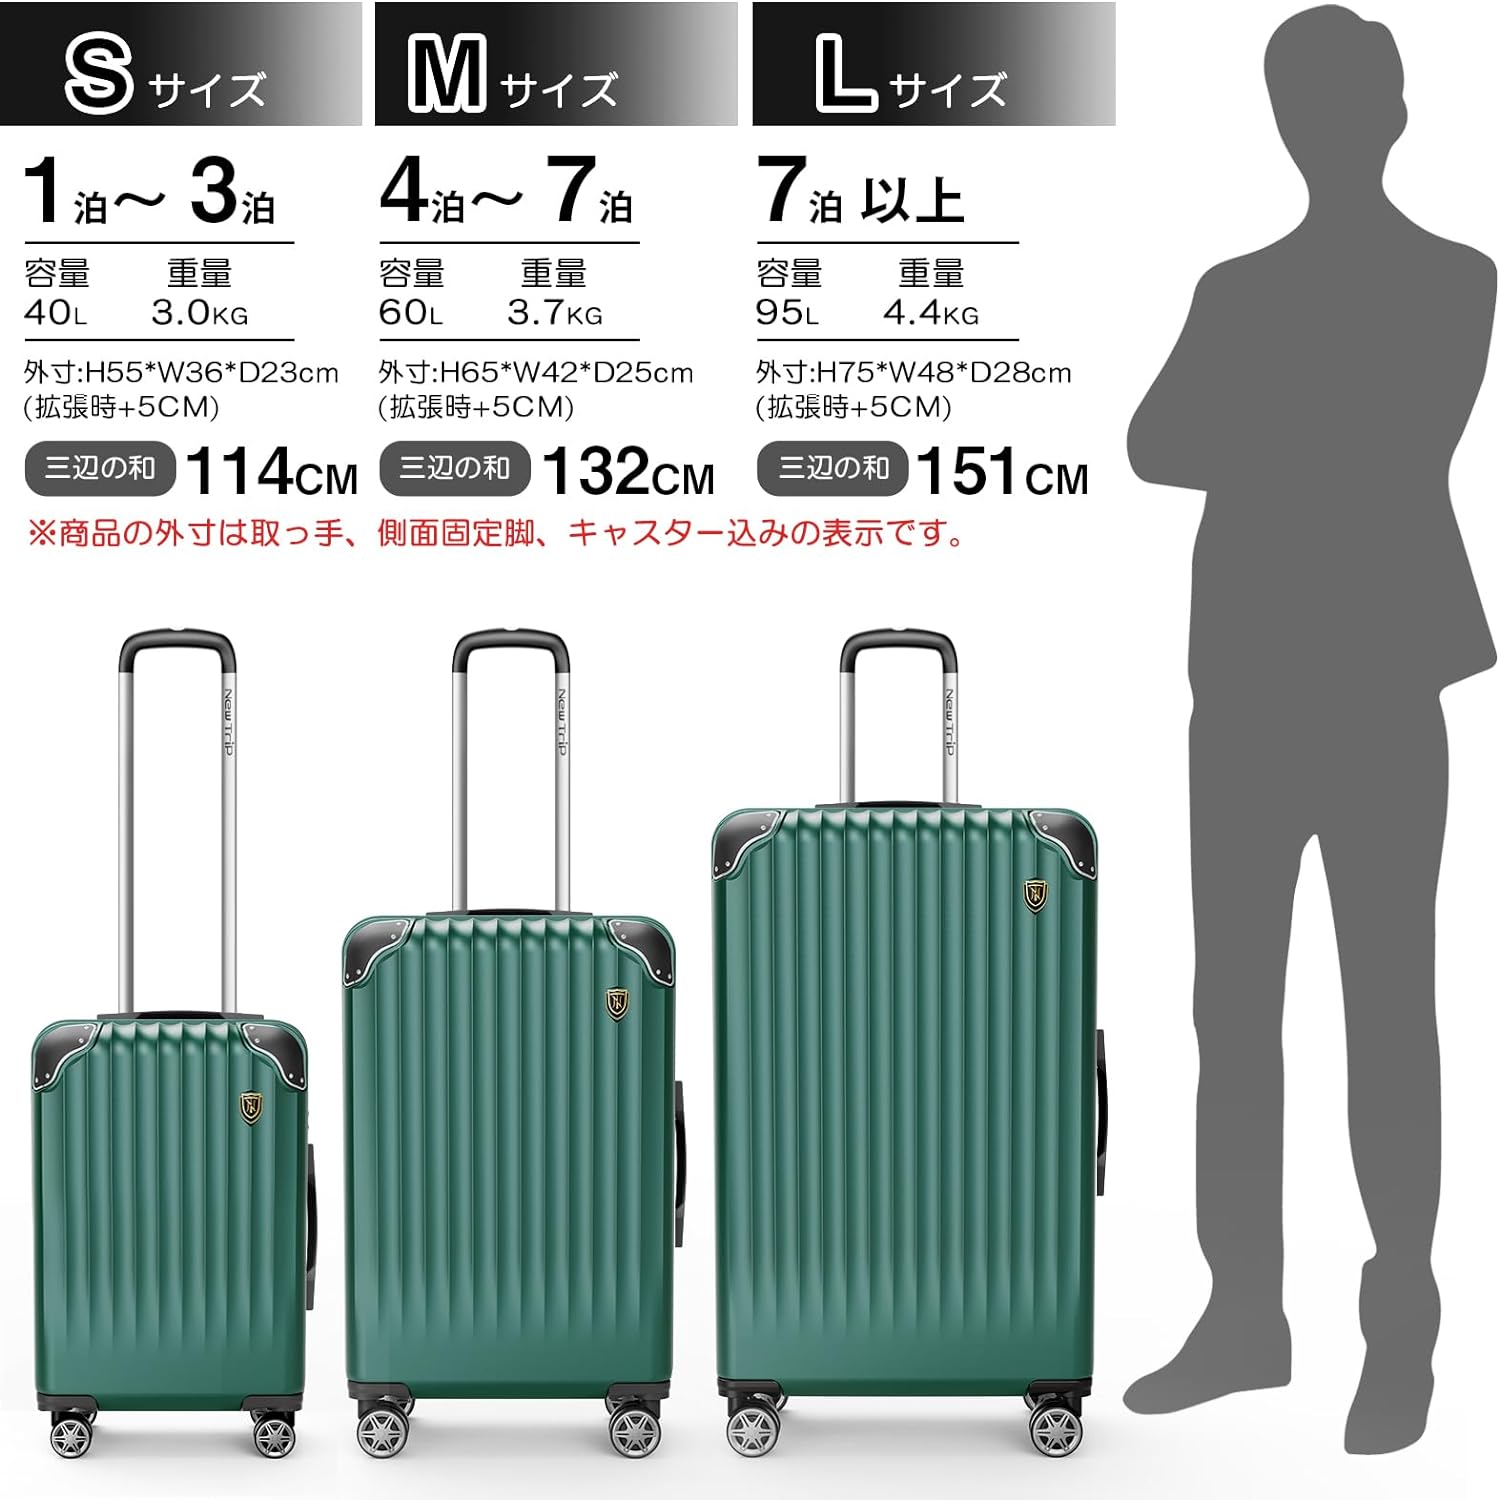 [New Trip] スーツケース 拡張機能付き S-L グリーン40L-95L 容量 静音 旅行 海外 出張